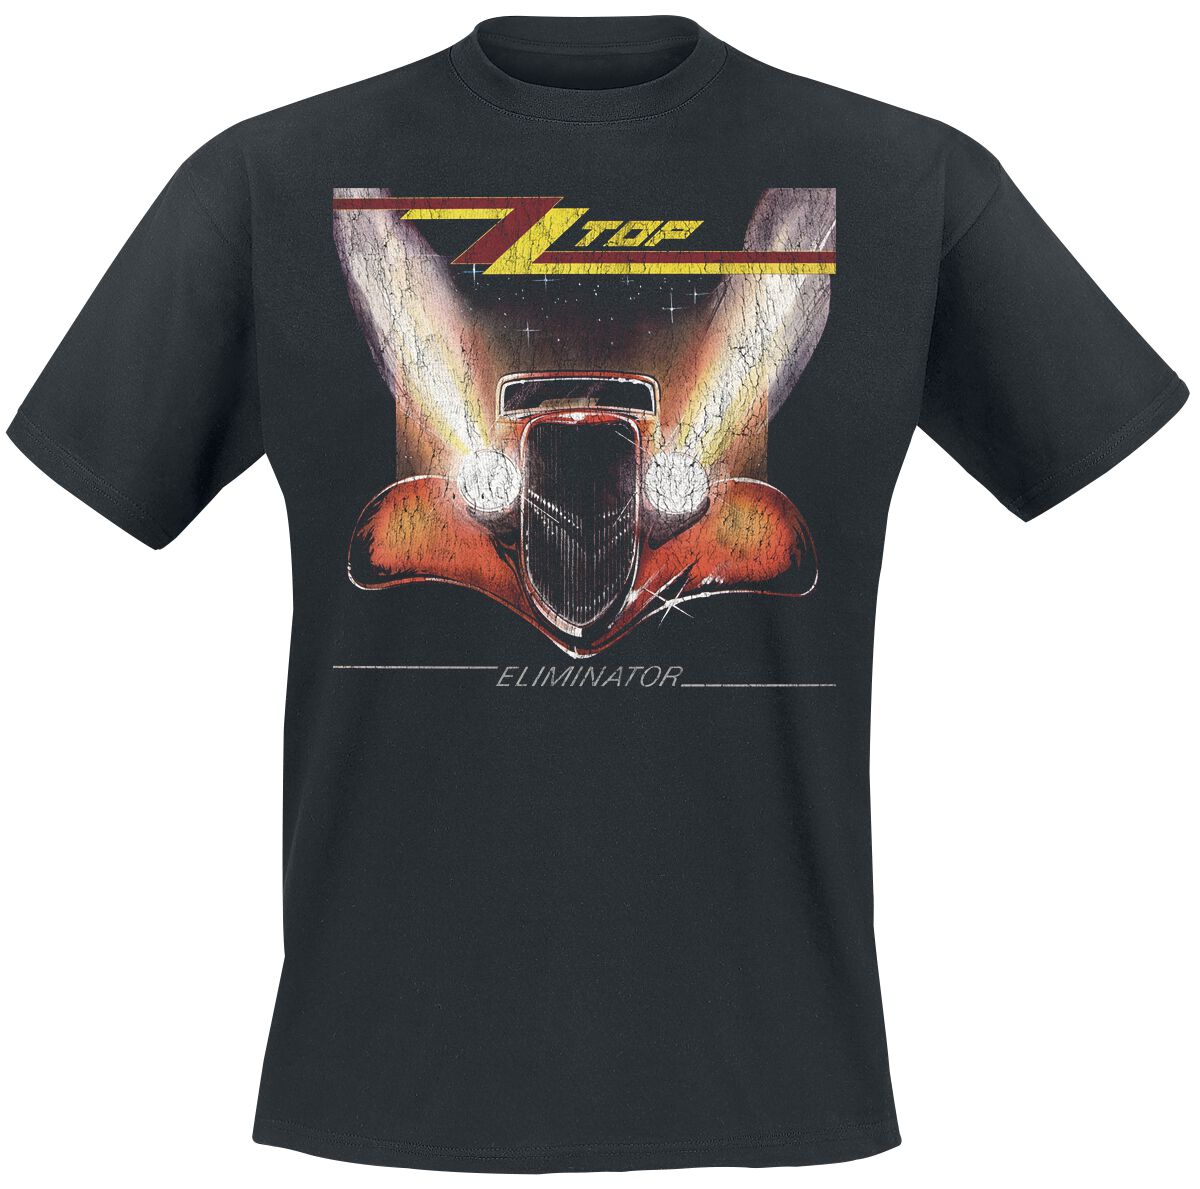 ZZ Top T-Shirt - Eliminator - S bis 3XL - für Männer - Größe XXL - schwarz  - Lizenziertes Merchandise!